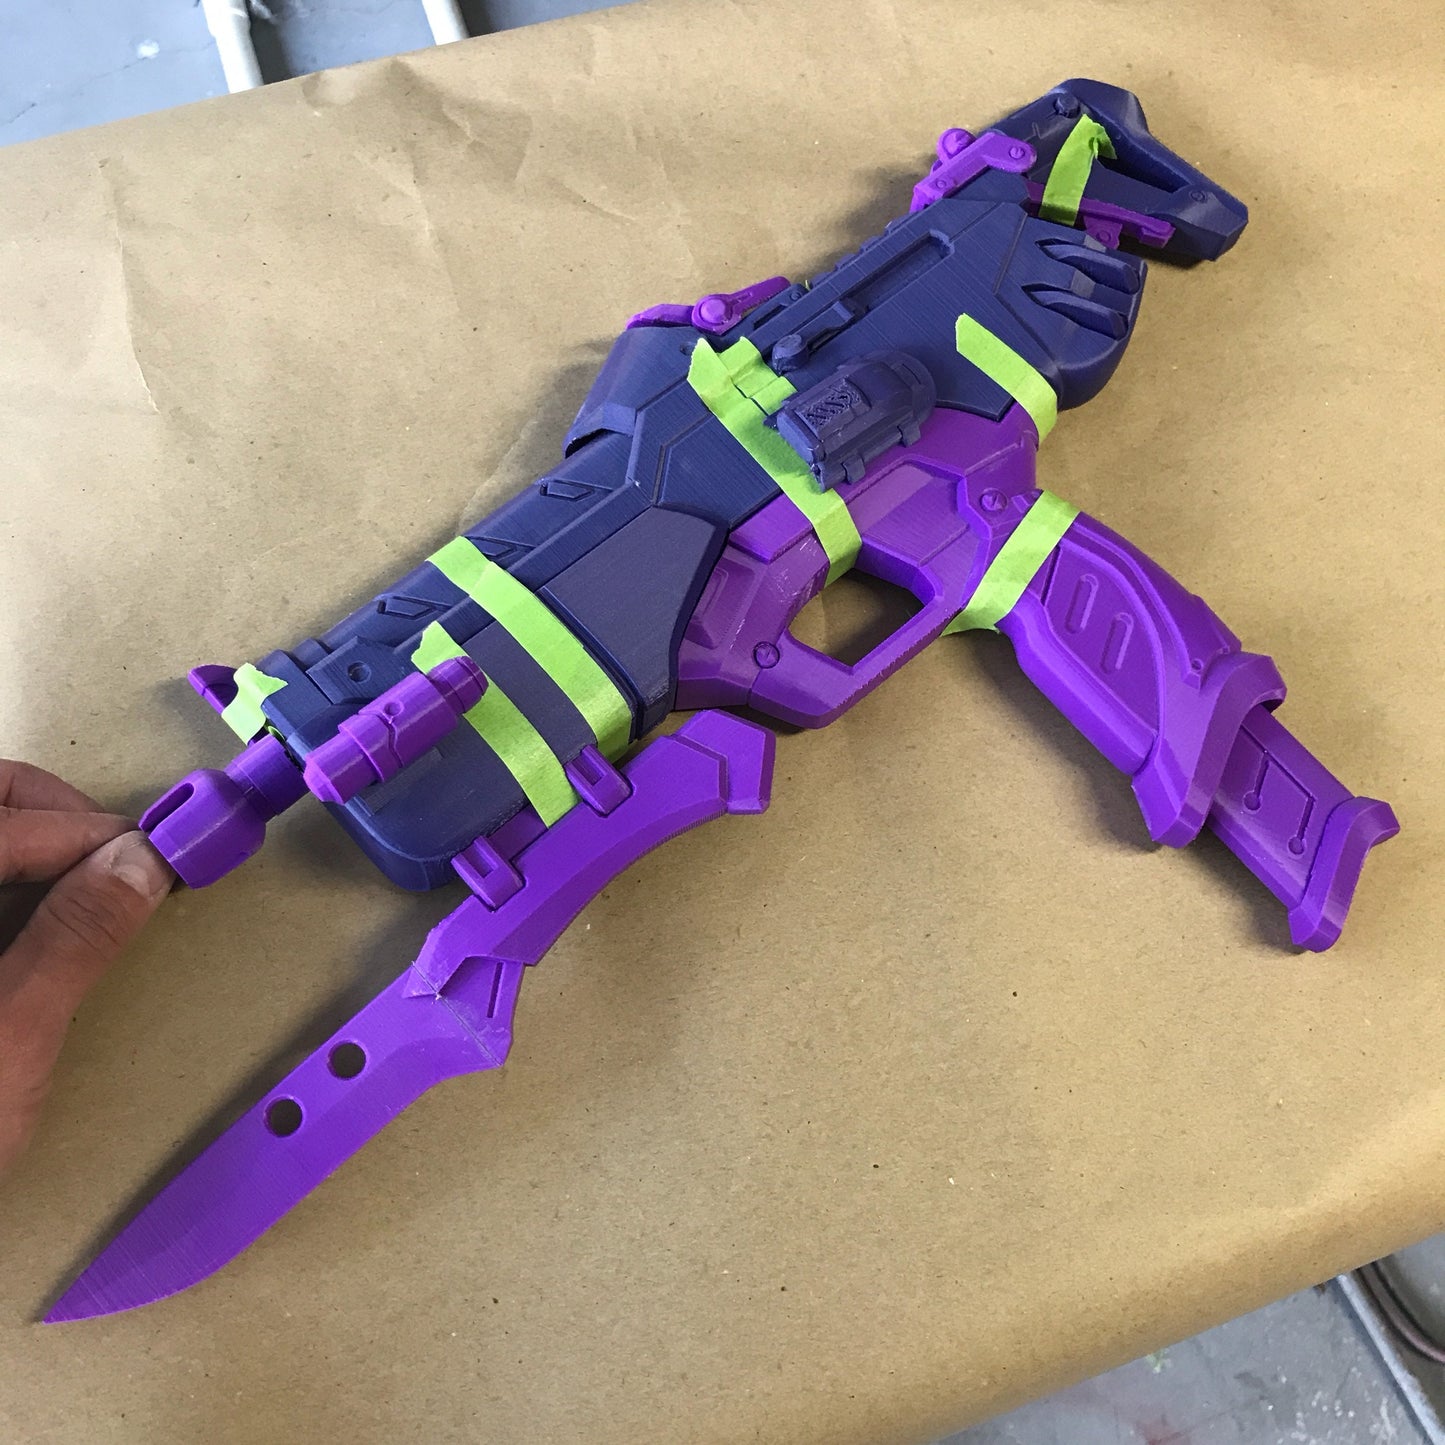 Sombra Talon Machine Gun - 3D printed kit